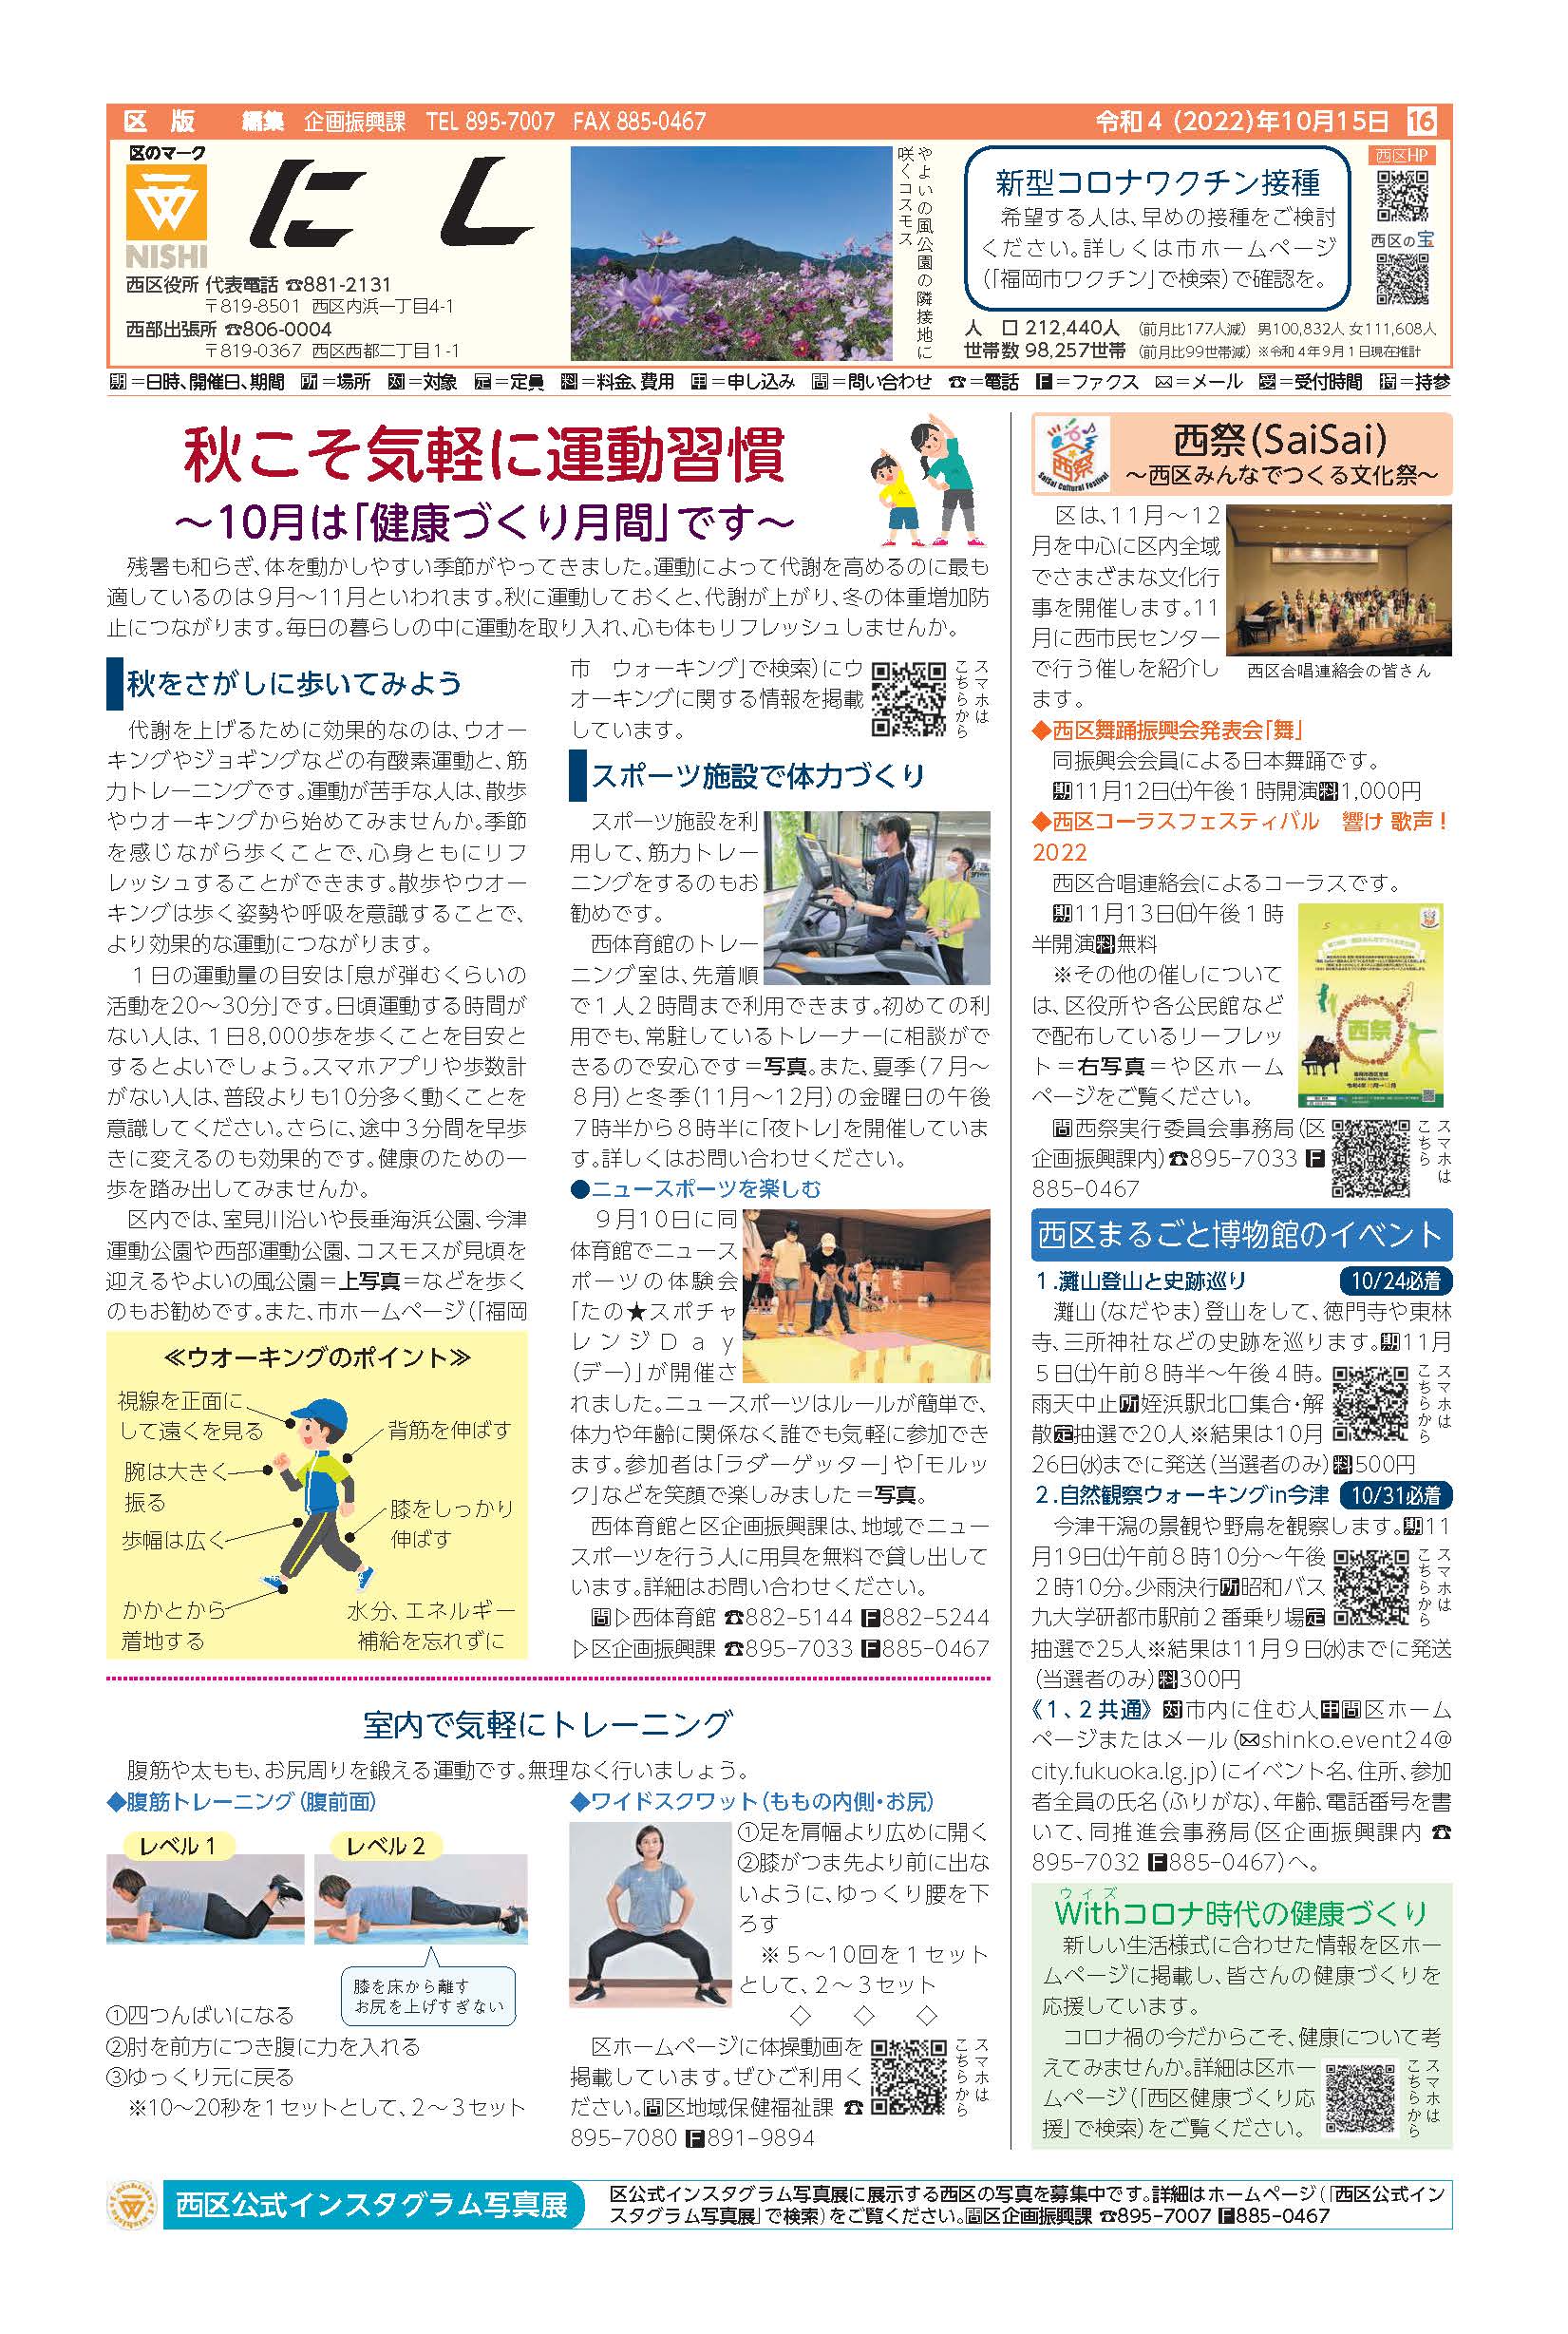 福岡市政だより2022年10月15日号の西区版の紙面画像